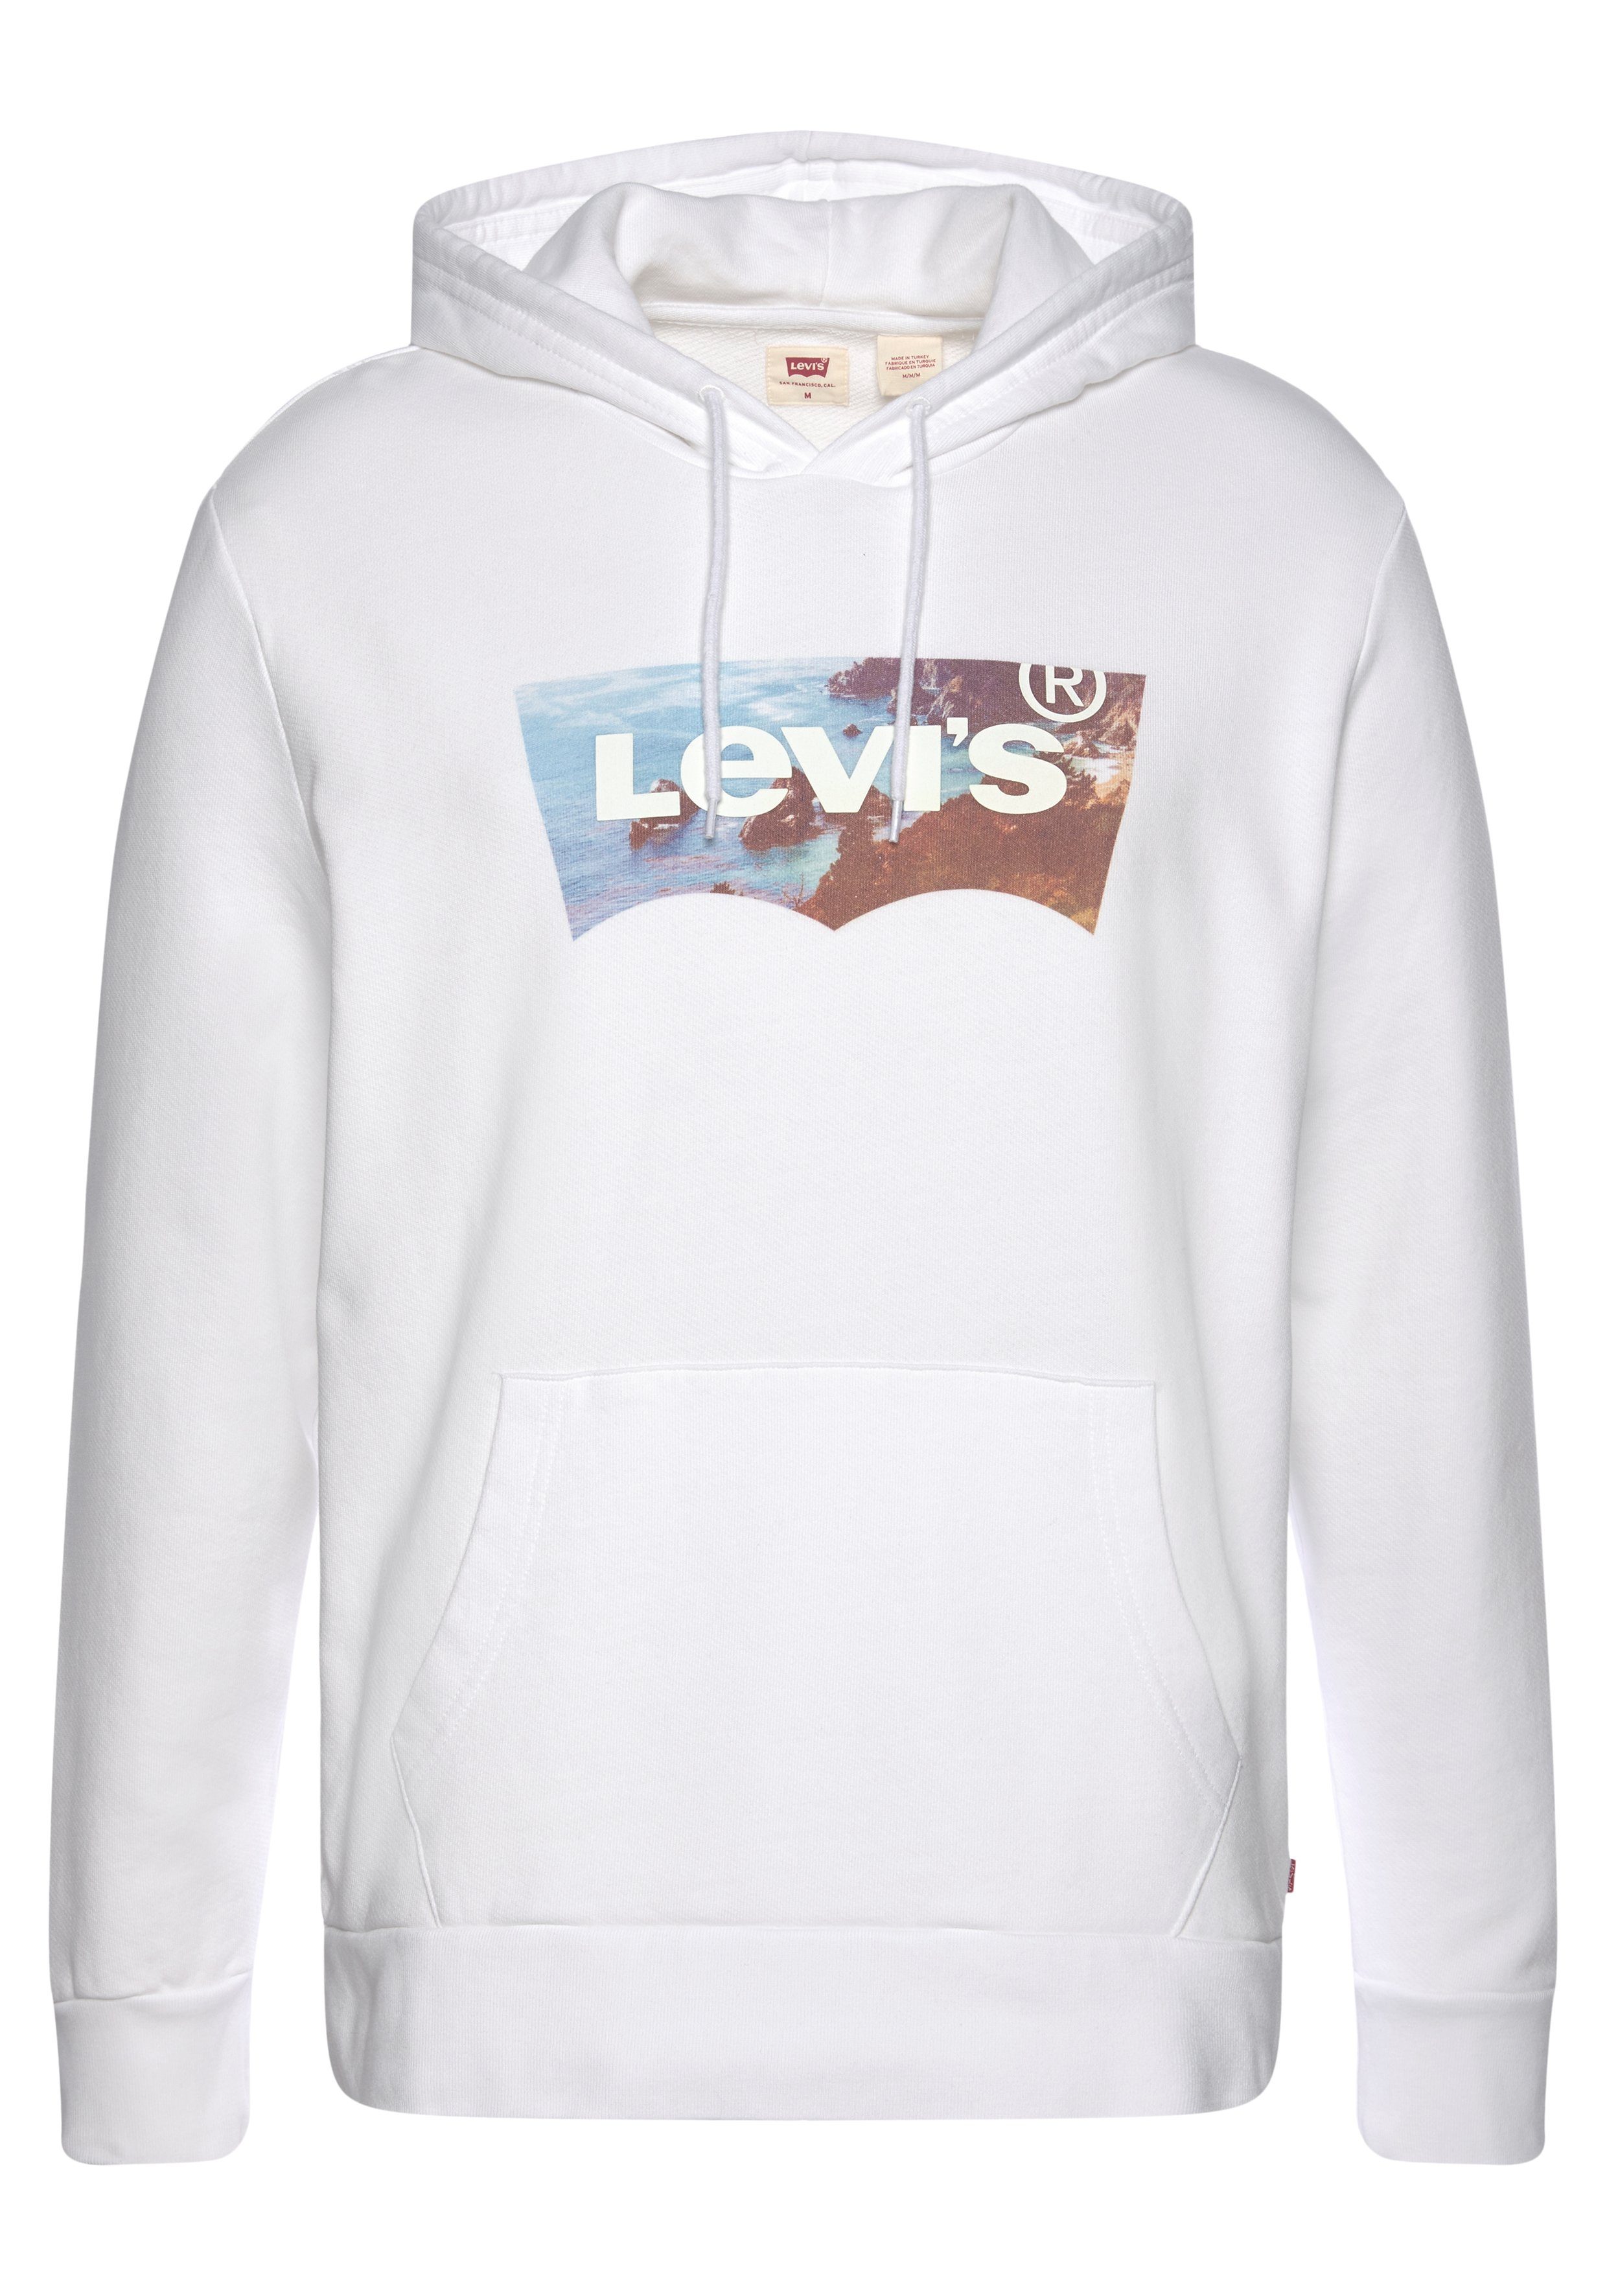 Levi's Herren Pullover online kaufen | OTTO